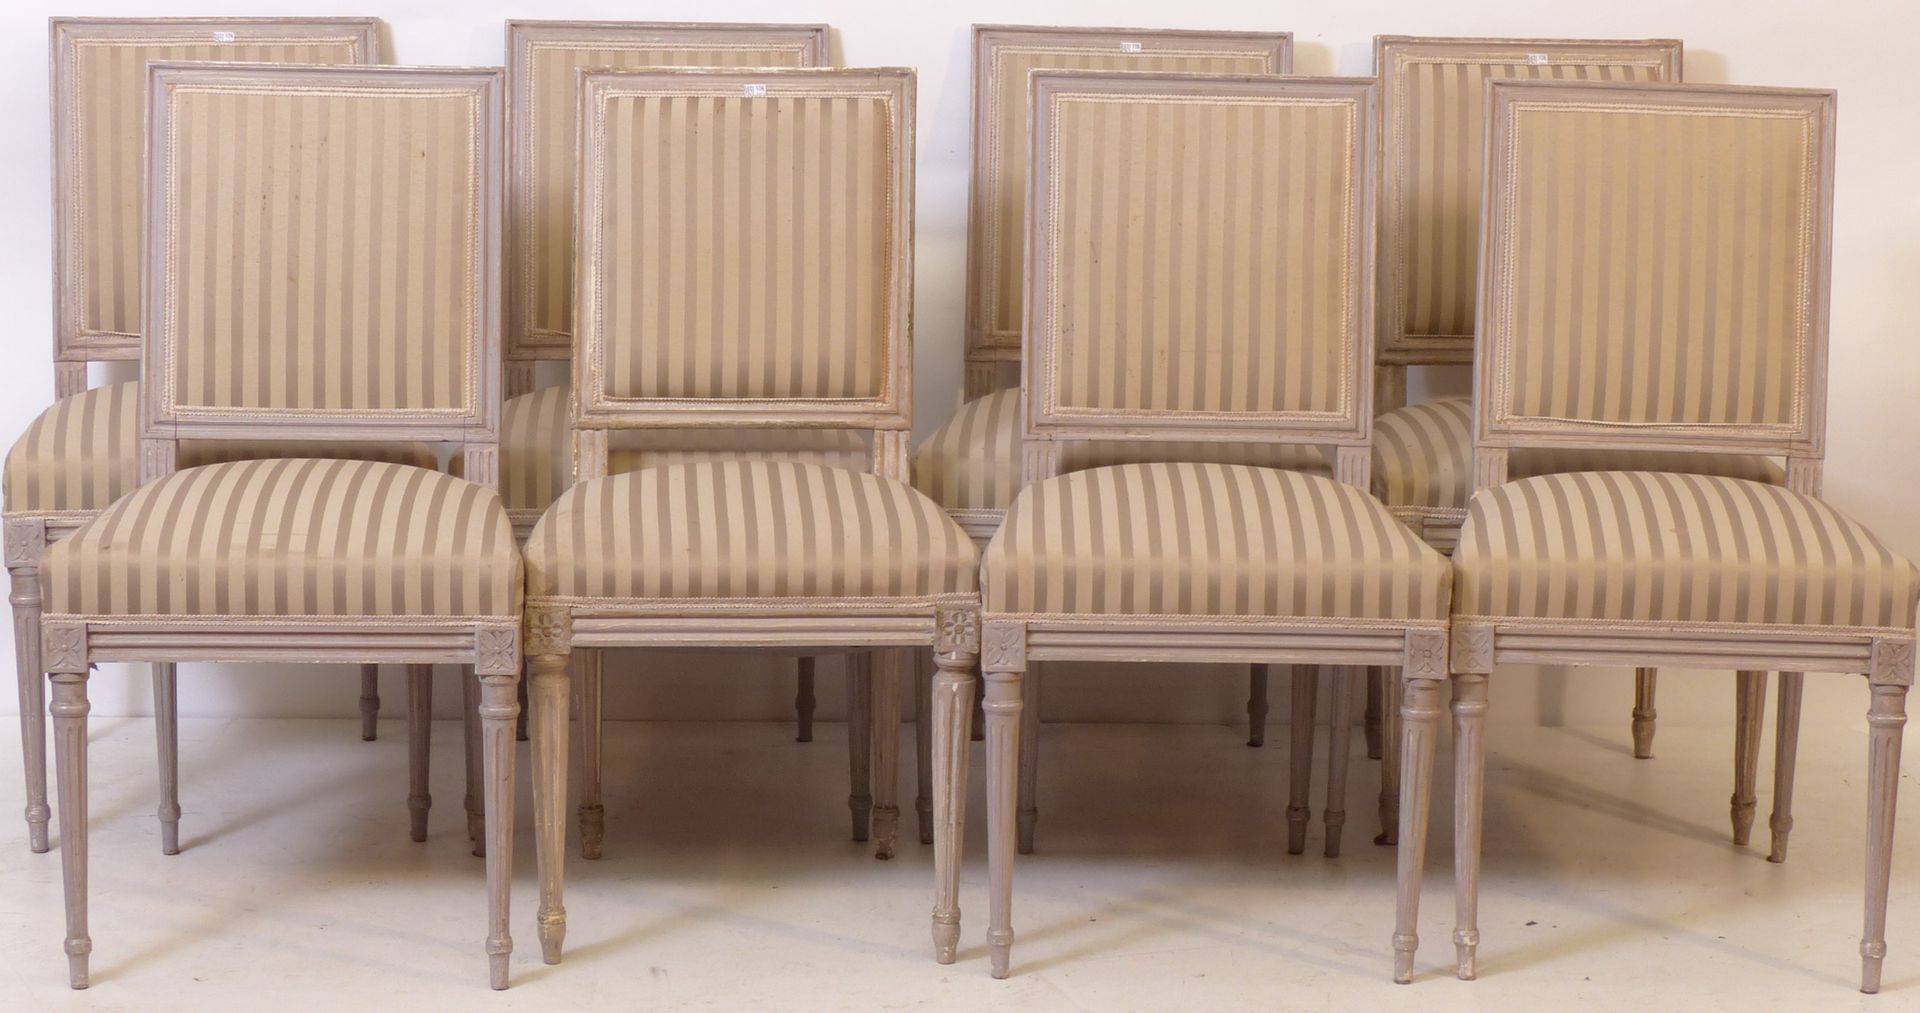 Null 路易十六风格的8把椅子组成的套房。